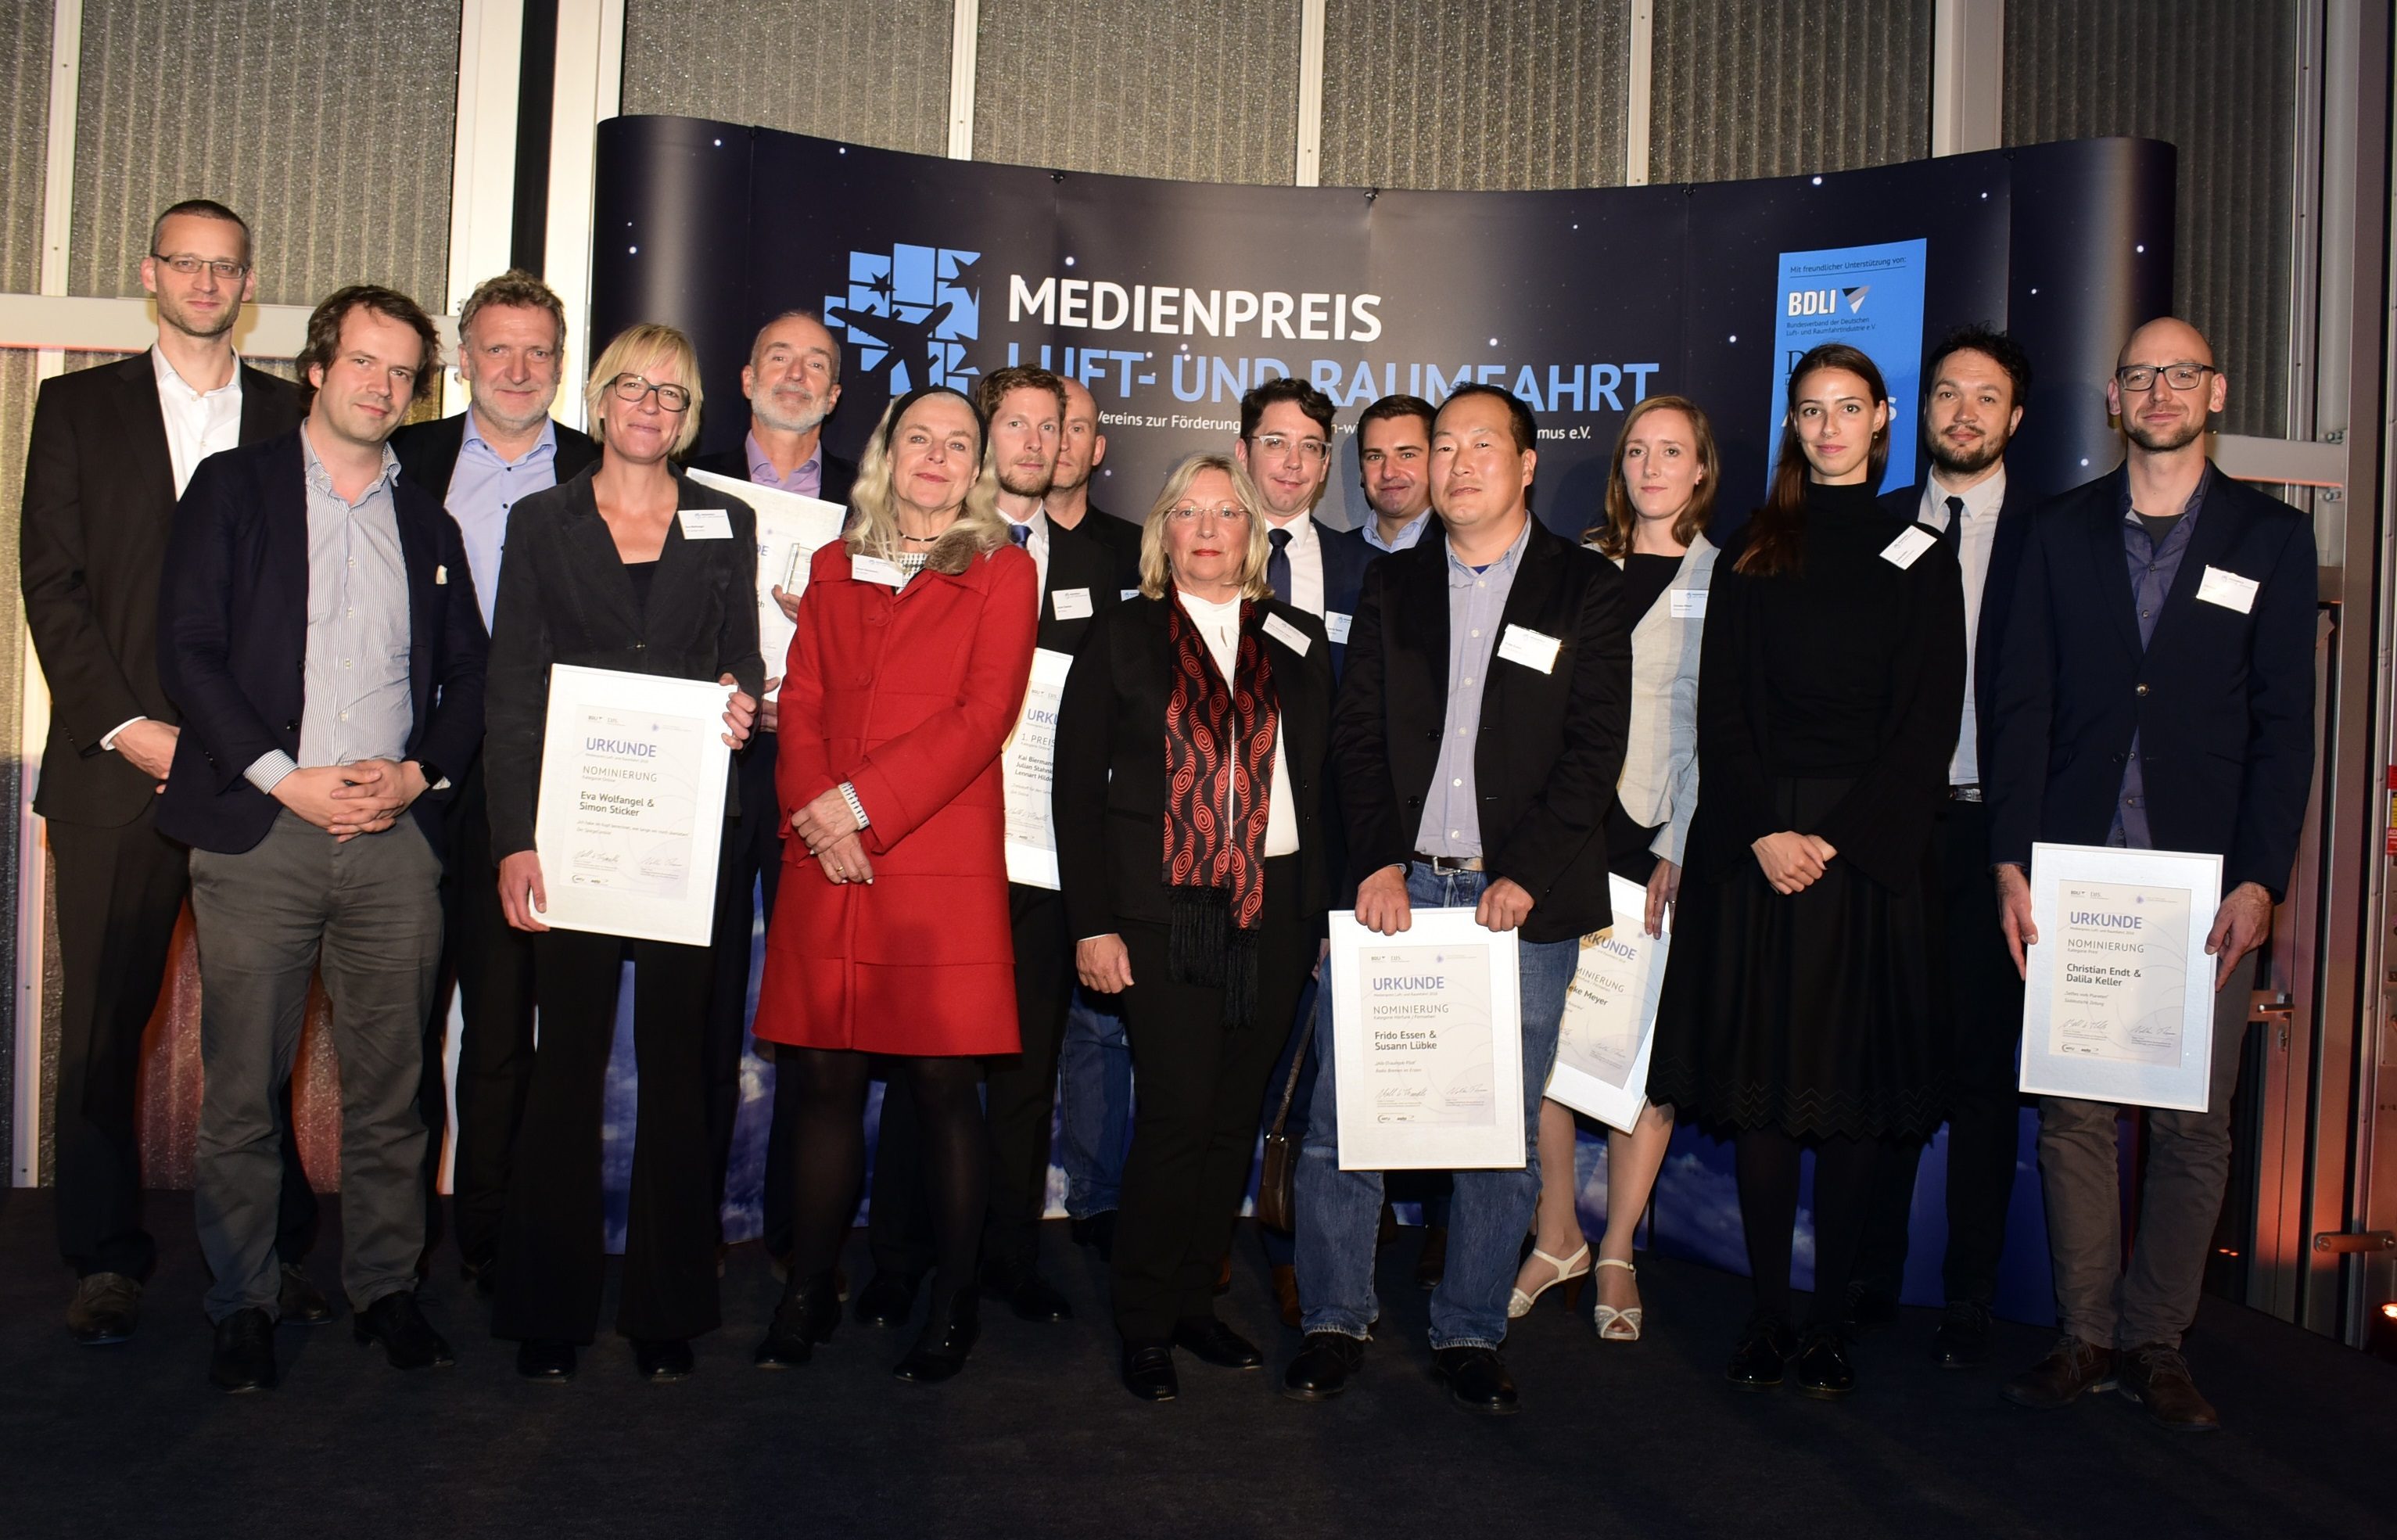 Preisträger und Nominierte bei der Verleihung des Medienpreises Luft- und Raumfahrt 2018 